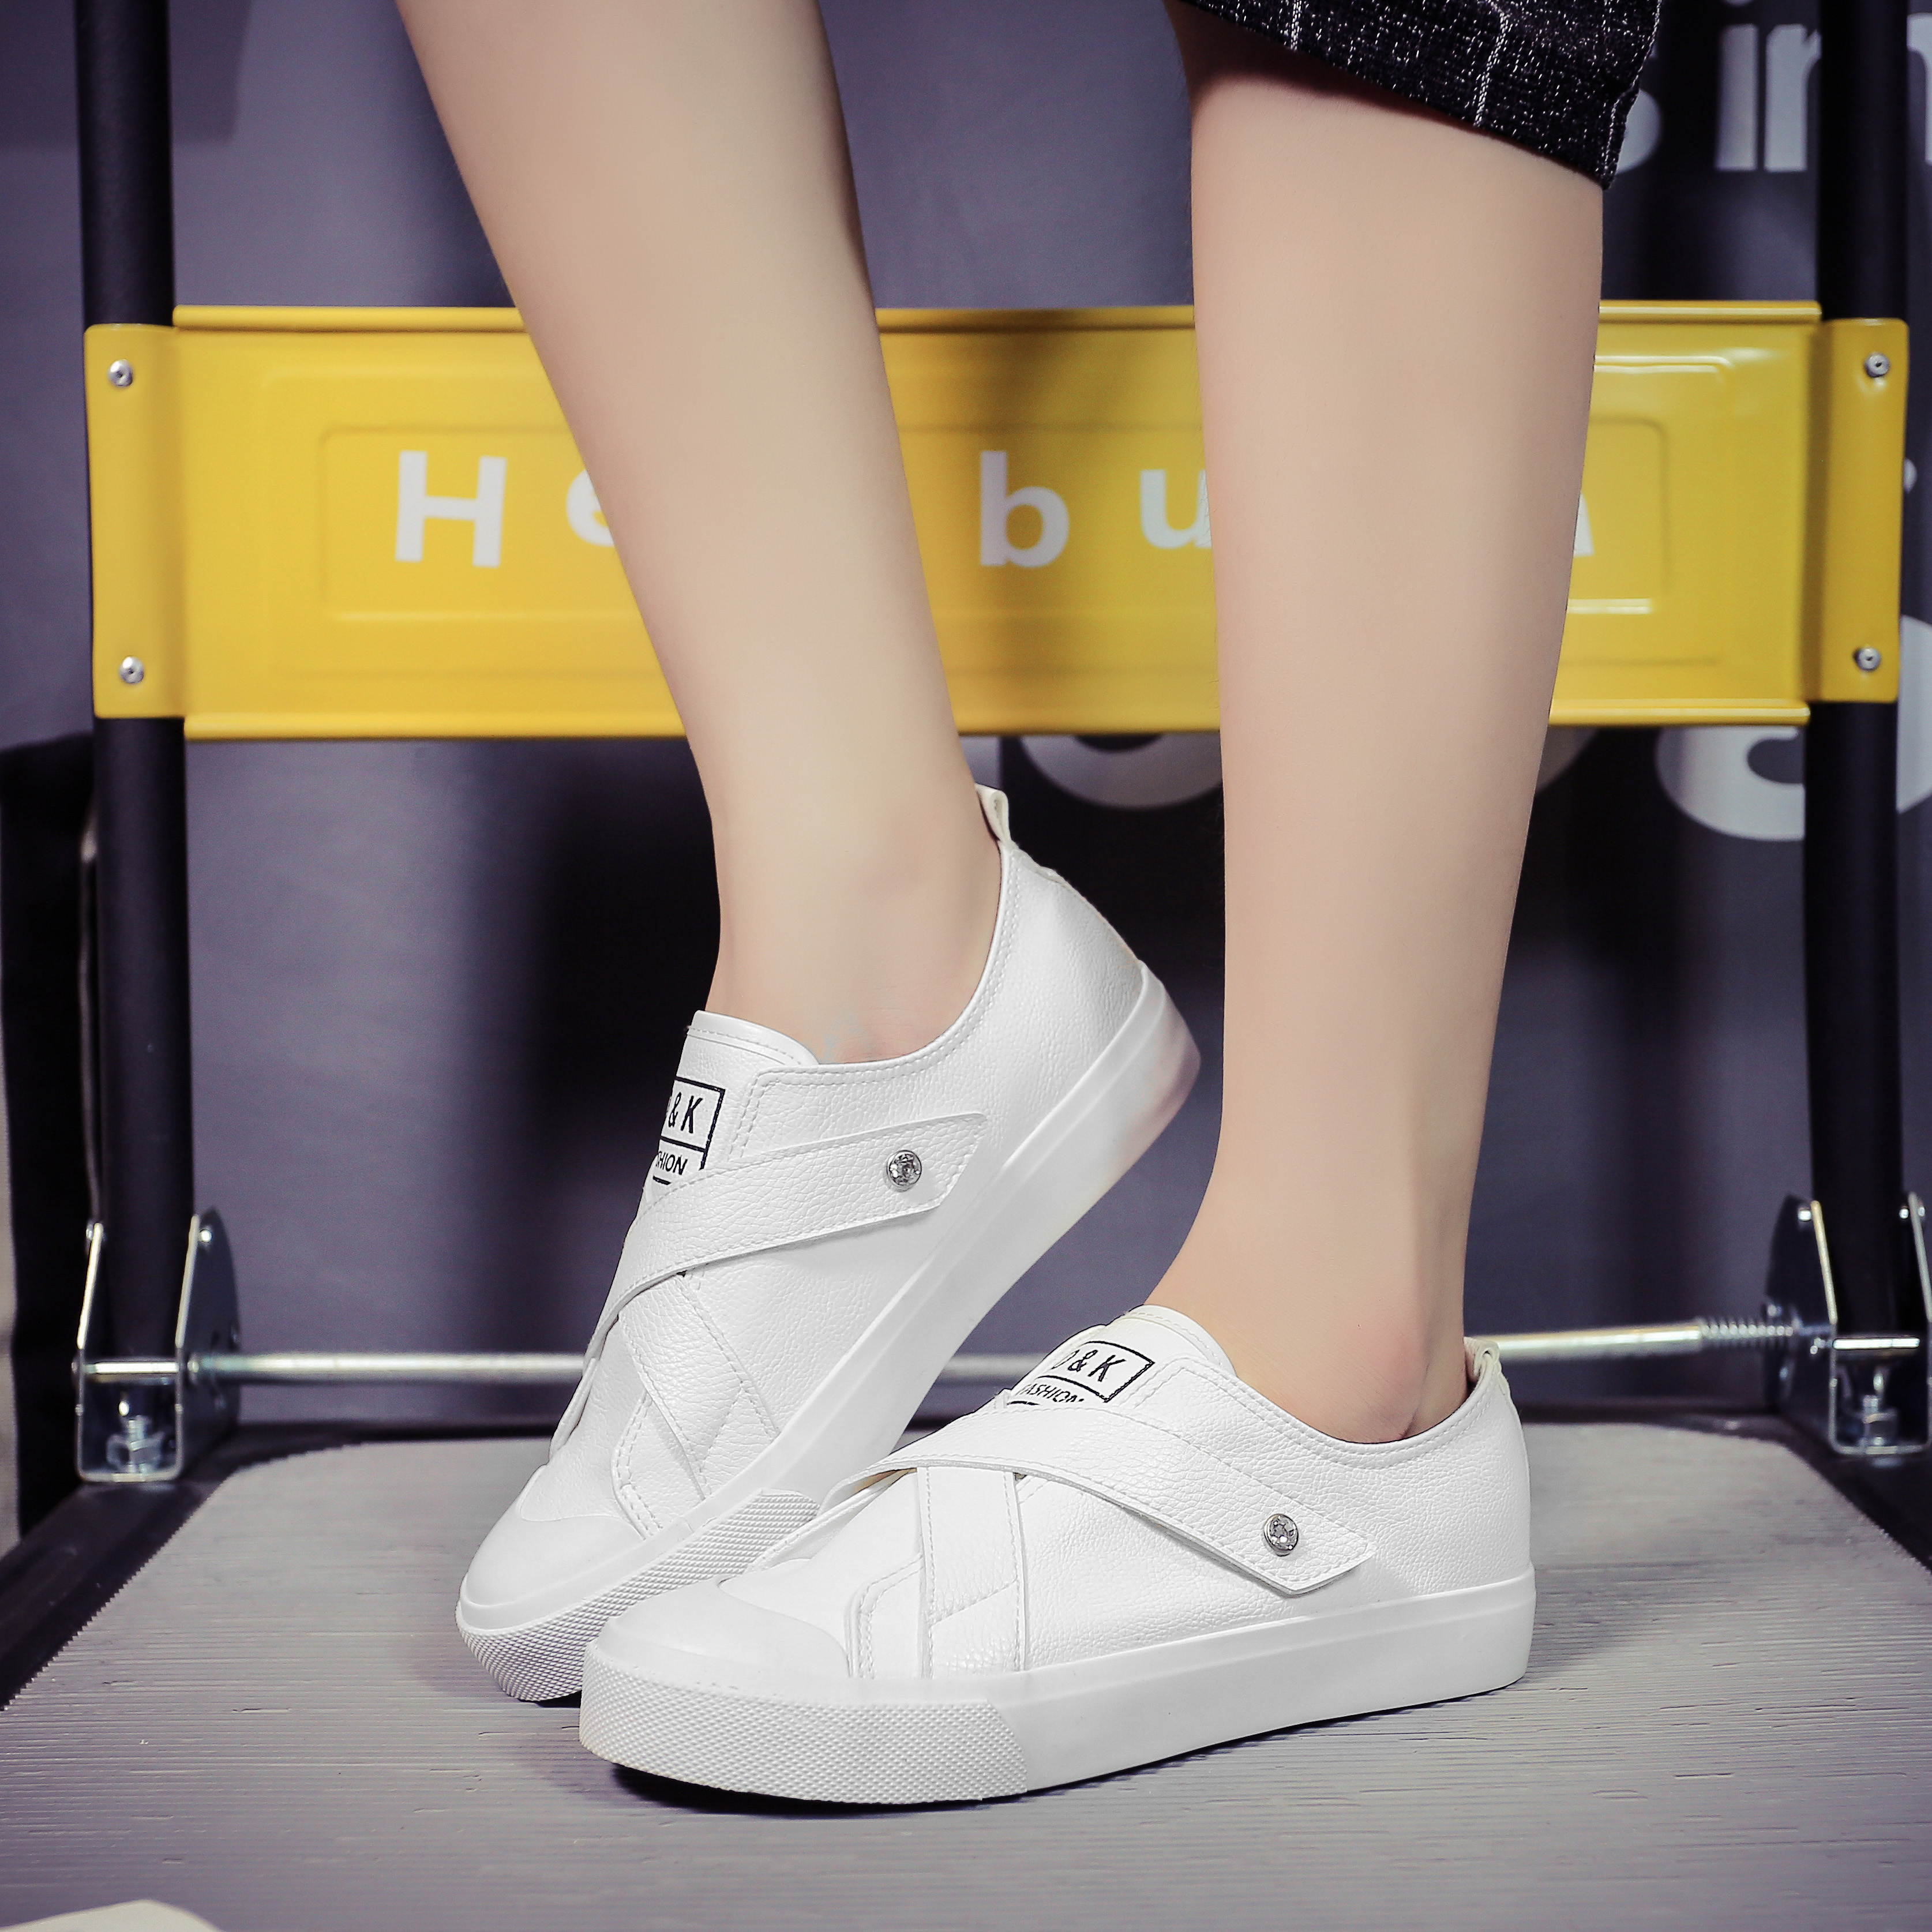 新款小白鞋子套脚平底运动鞋女士休闲鞋韩版帆布鞋女学生白色板鞋